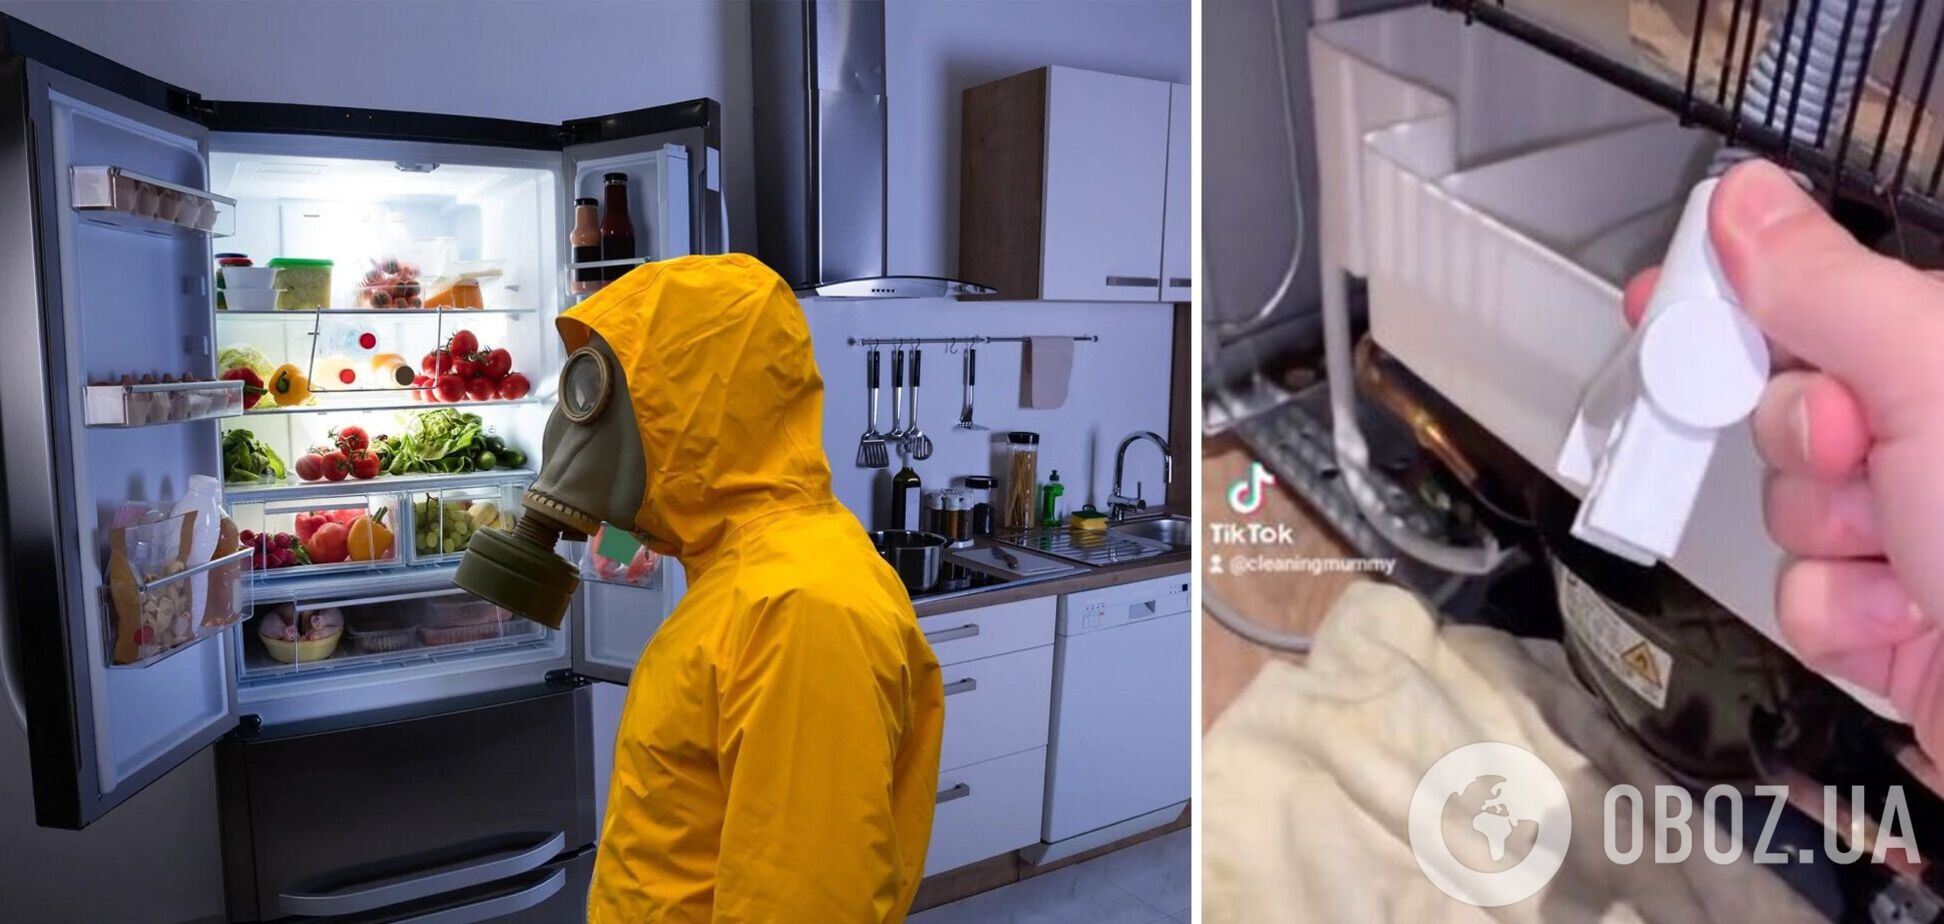 Як позбутися смороду з холодильника: жінка виявила таємний піддон, який треба регулярно чистити